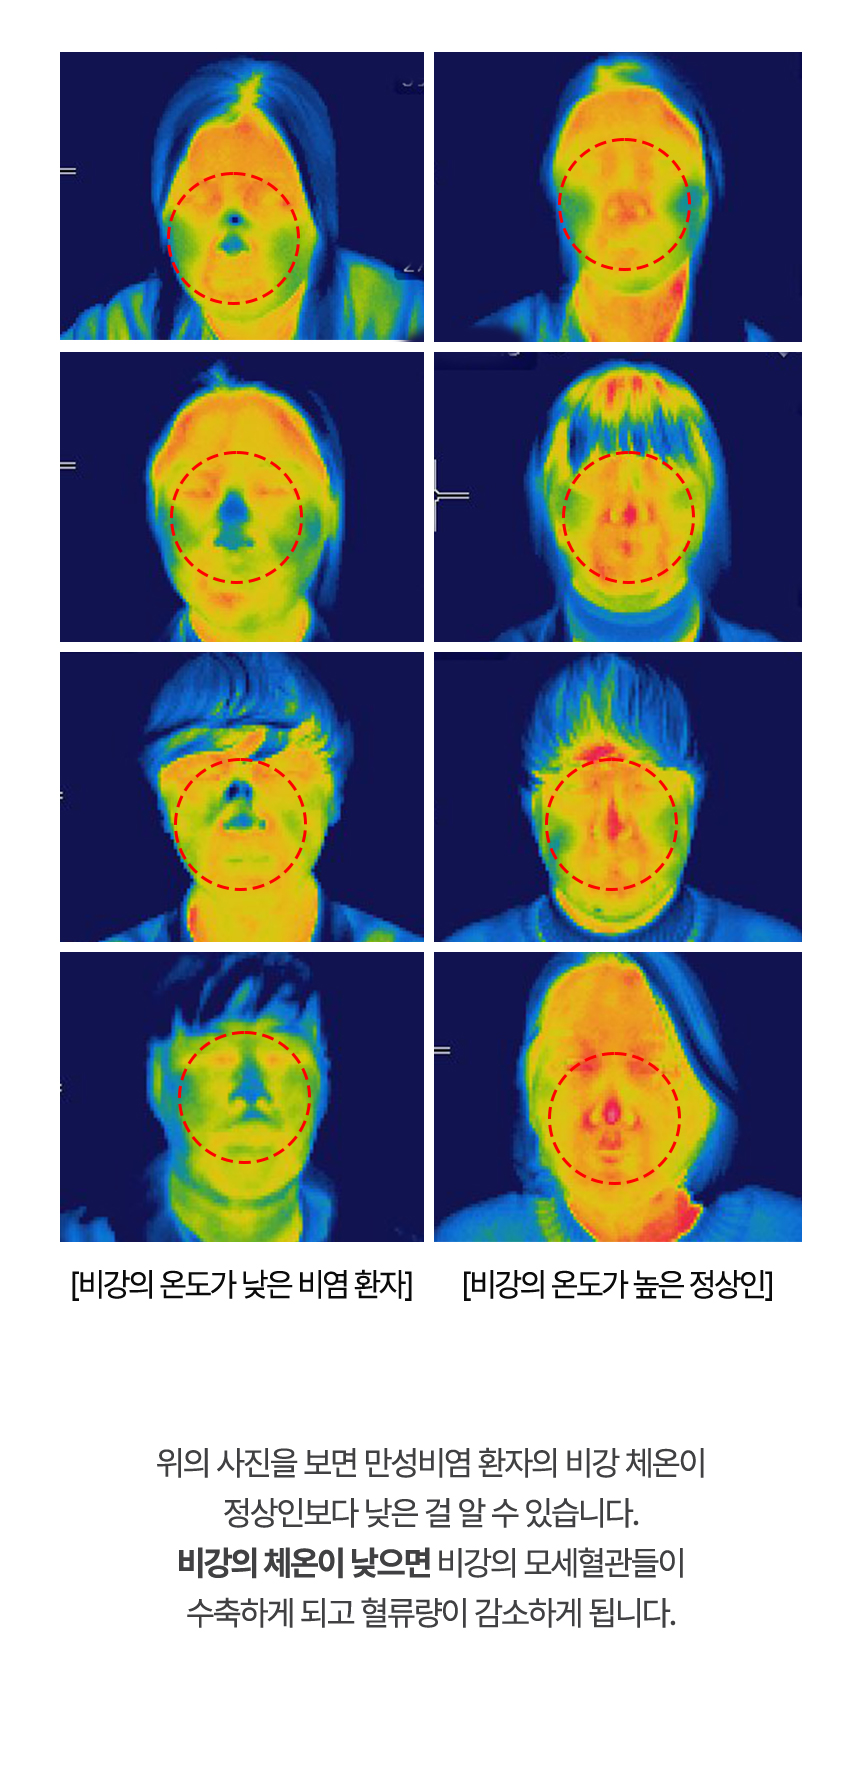 아래는 열화상카메라로 촬영한 사진으로 비염 환자의 비강 체온이 정상인보다 낮은 걸 알 수 있습니다.